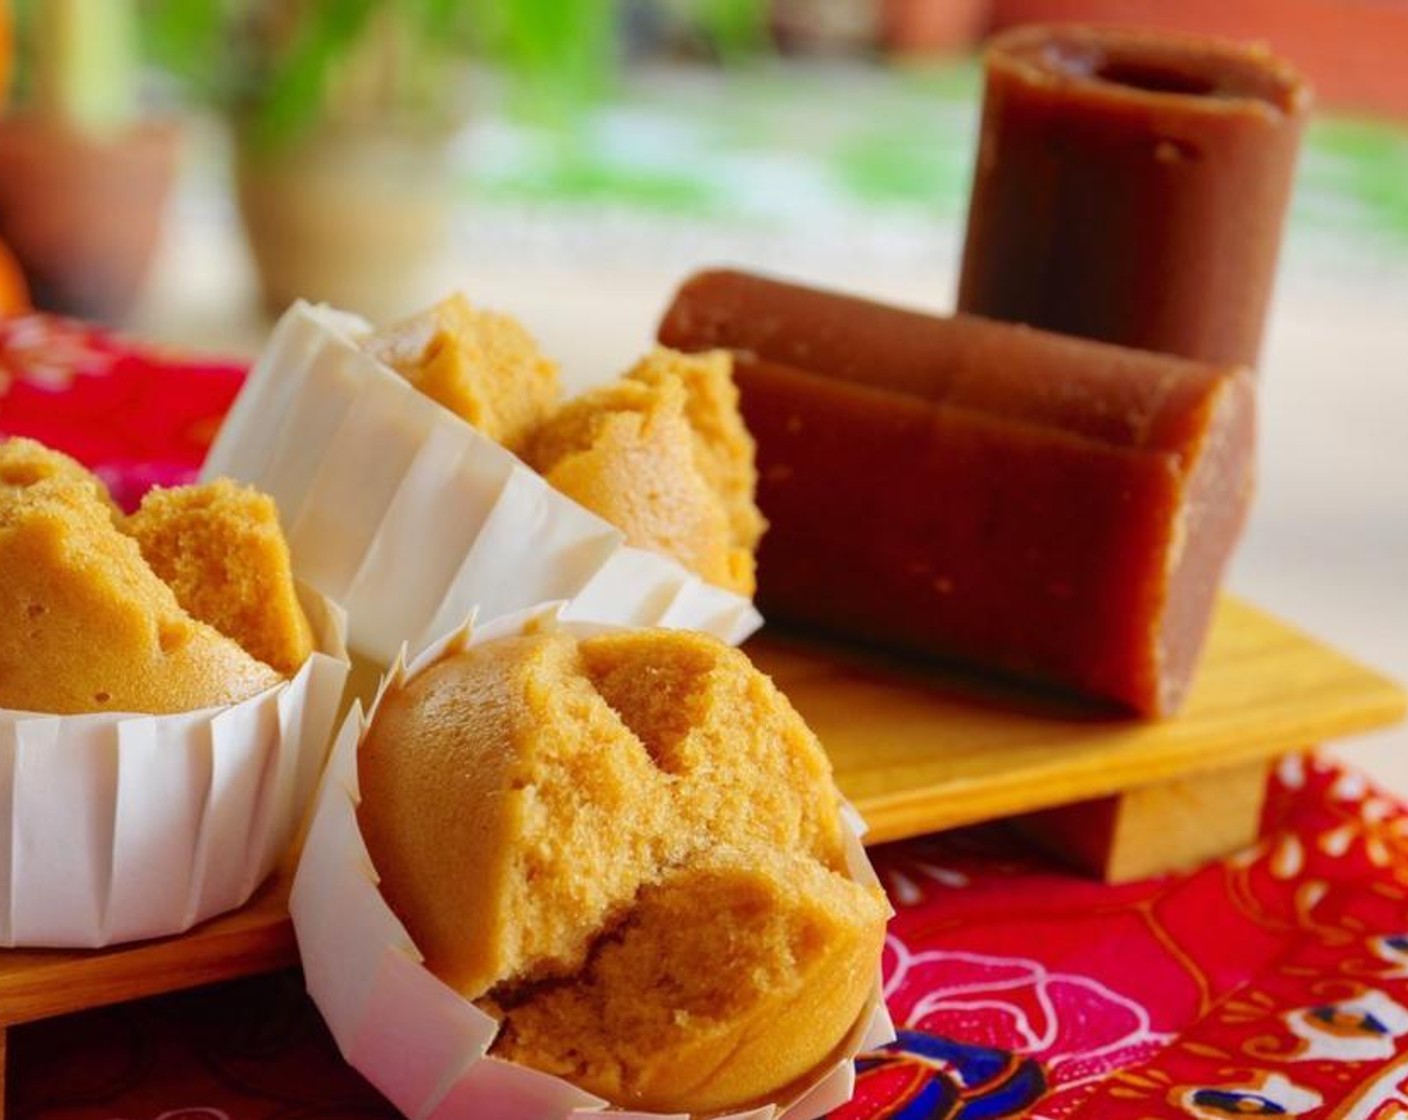 Palm Sugar Steamed Muffins (Gula Melaka Huat Kueh)